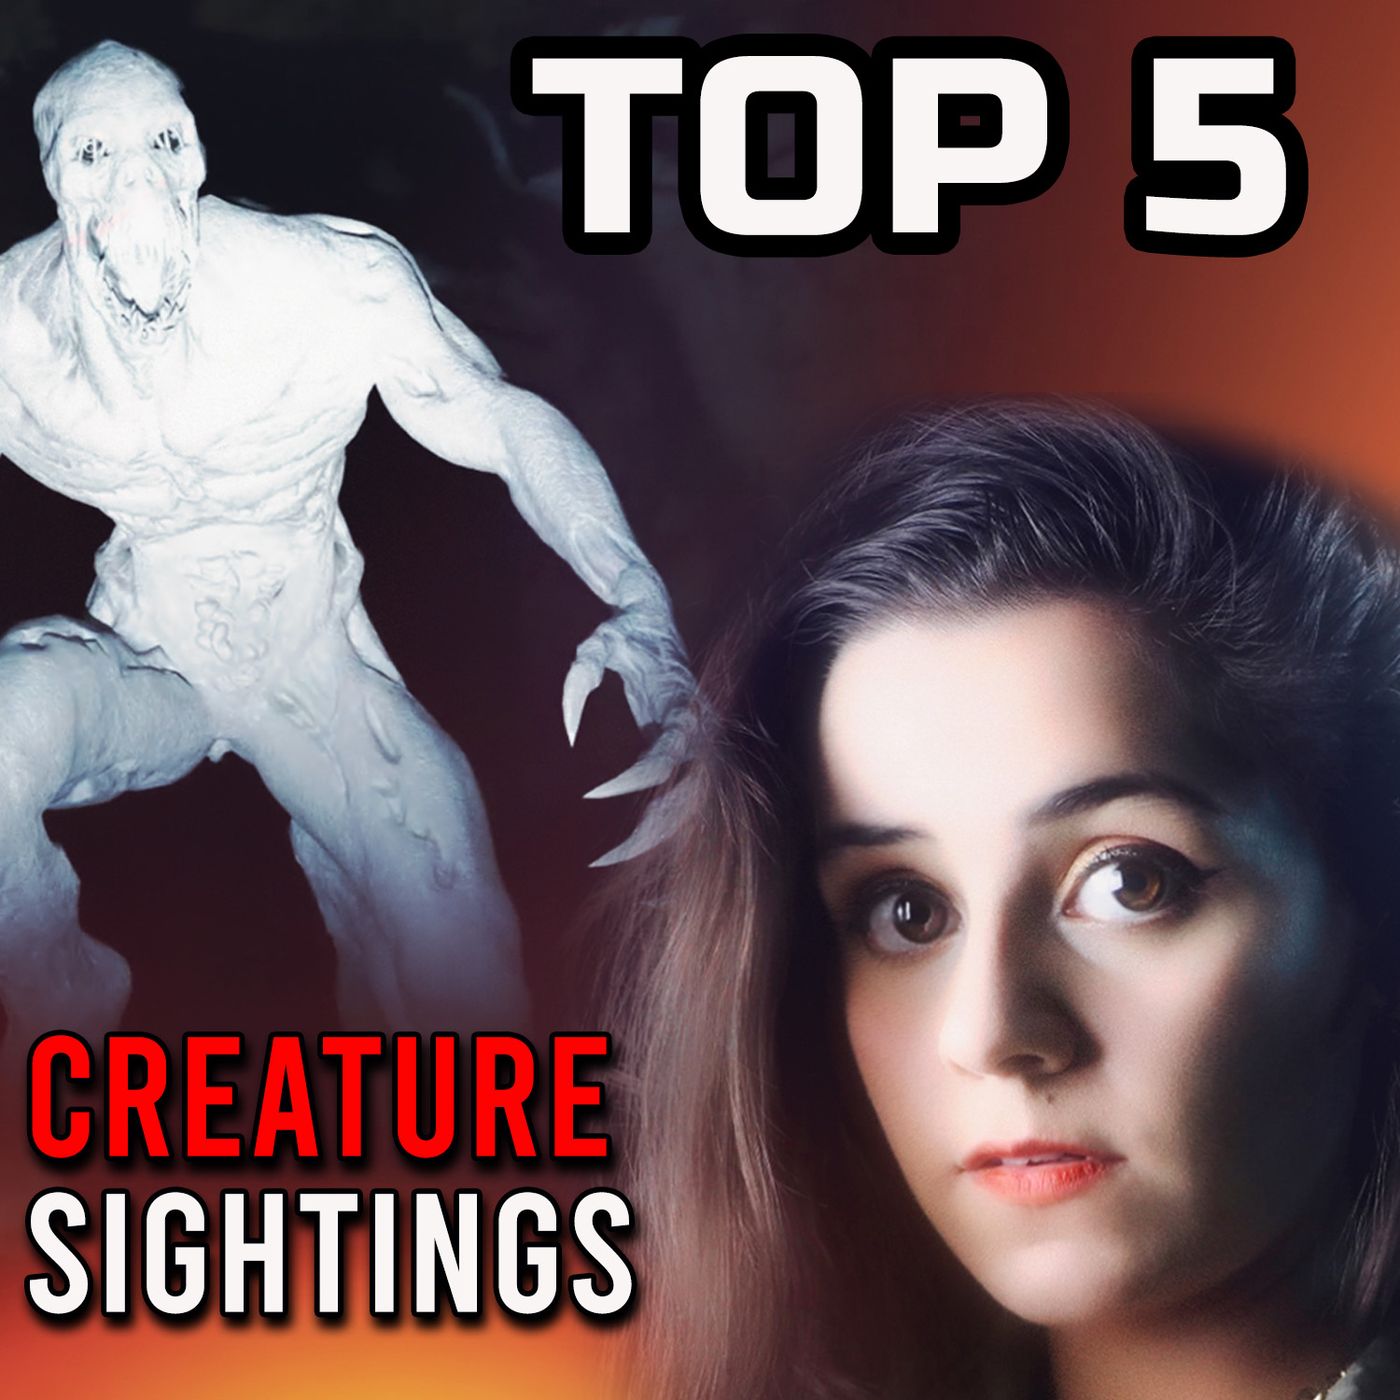 TOP 5 Creature Sightings